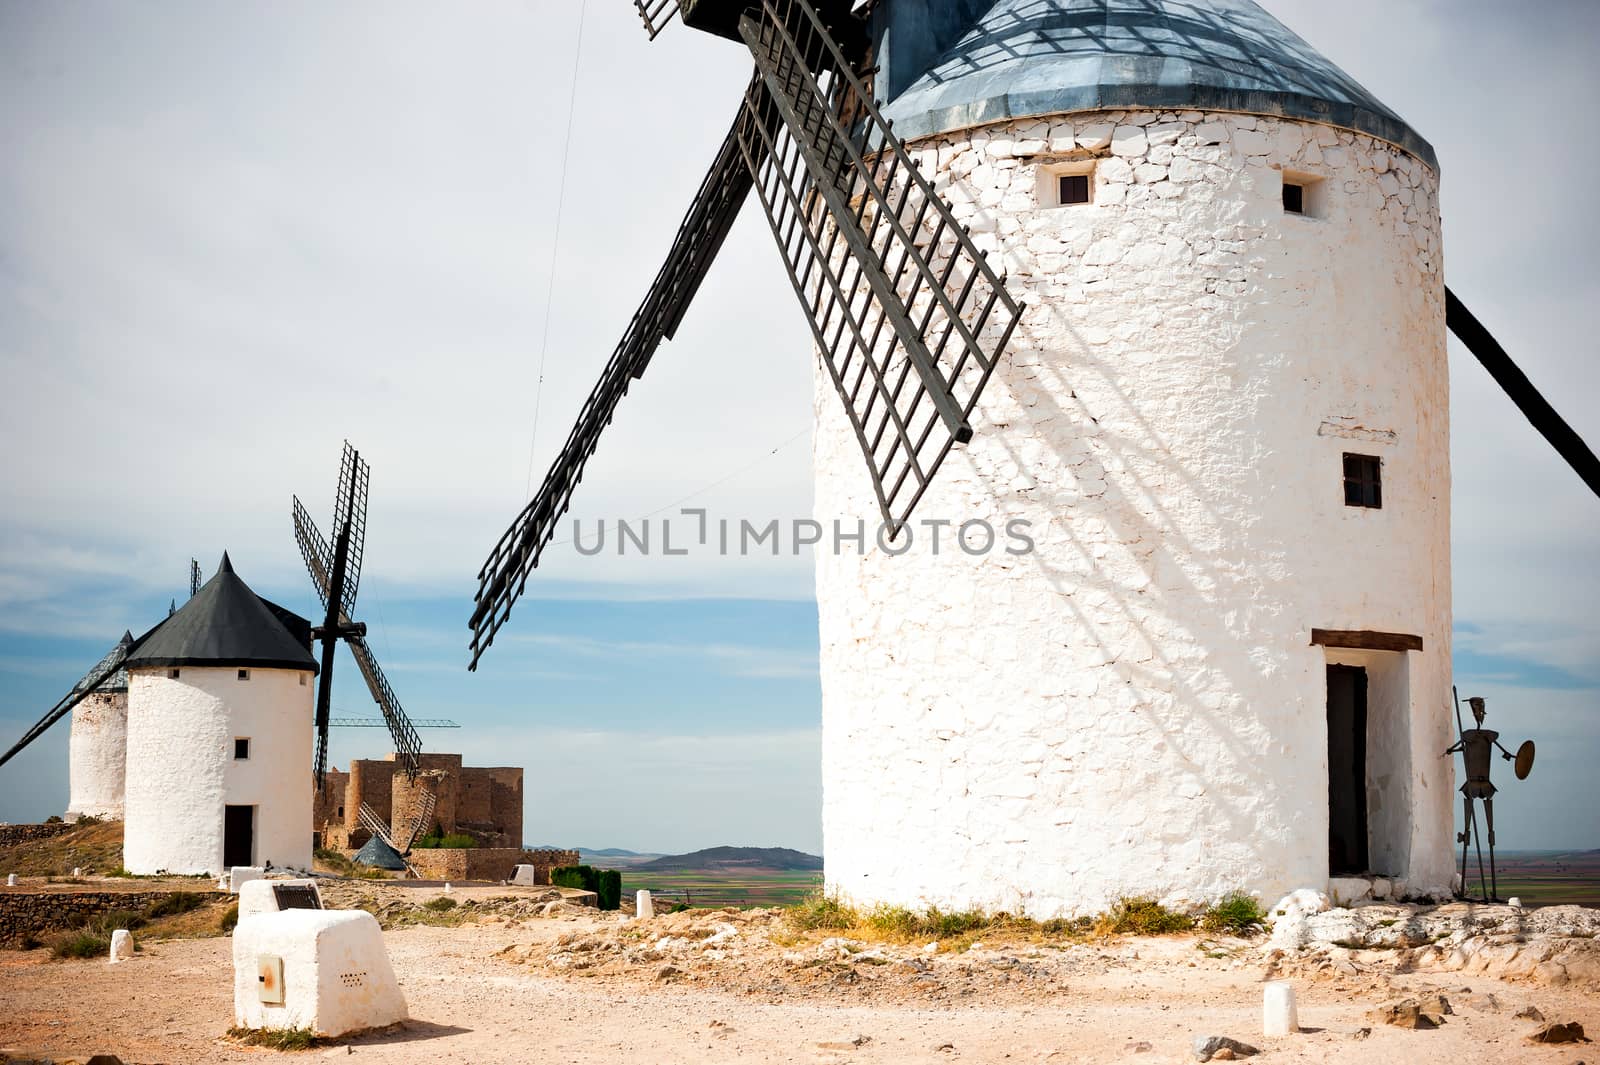 windmills in Consuegra by GekaSkr